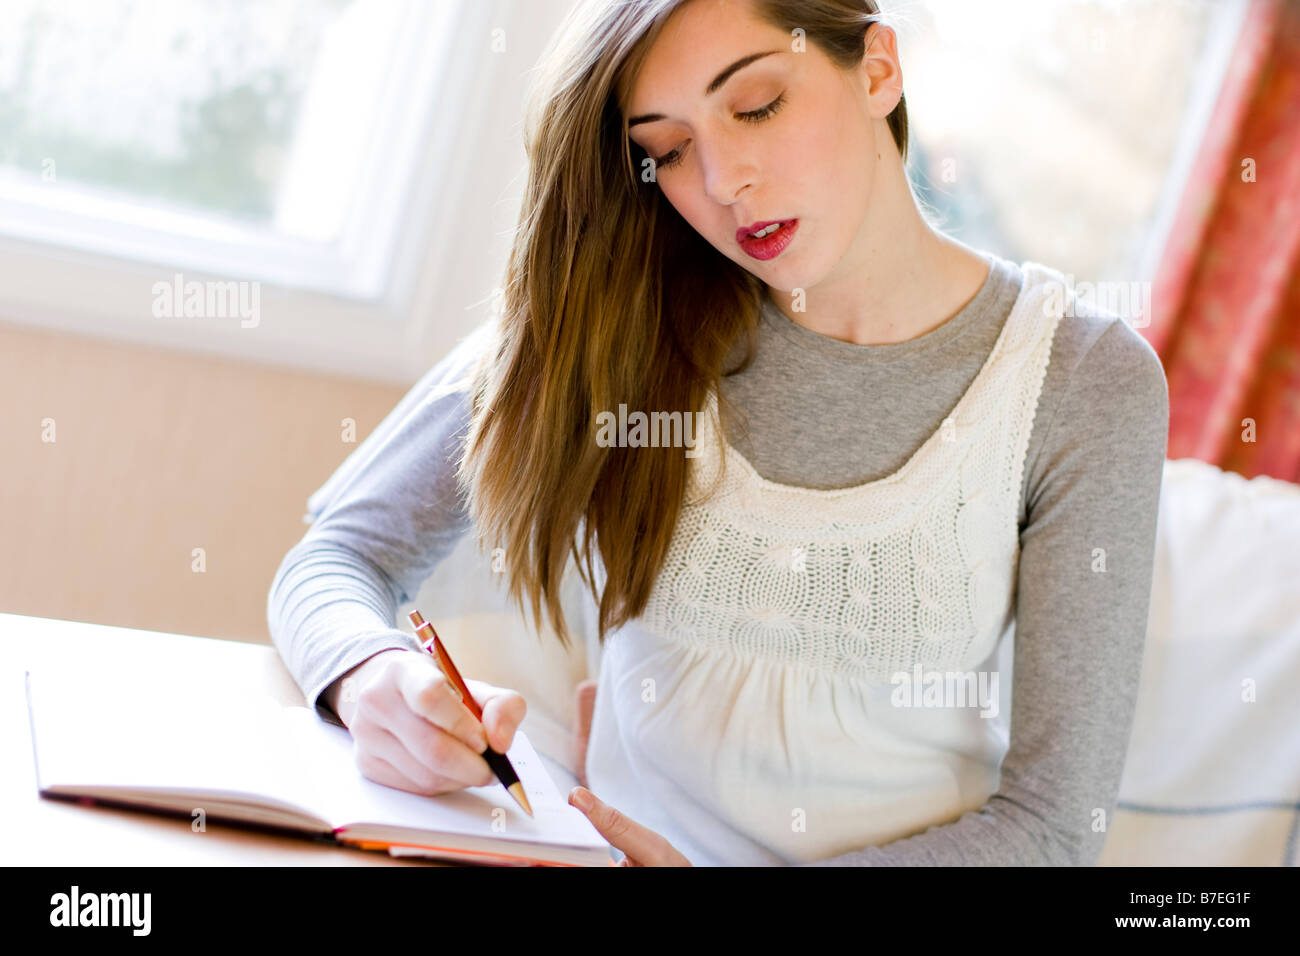 Girl writing in diary Stock Photo